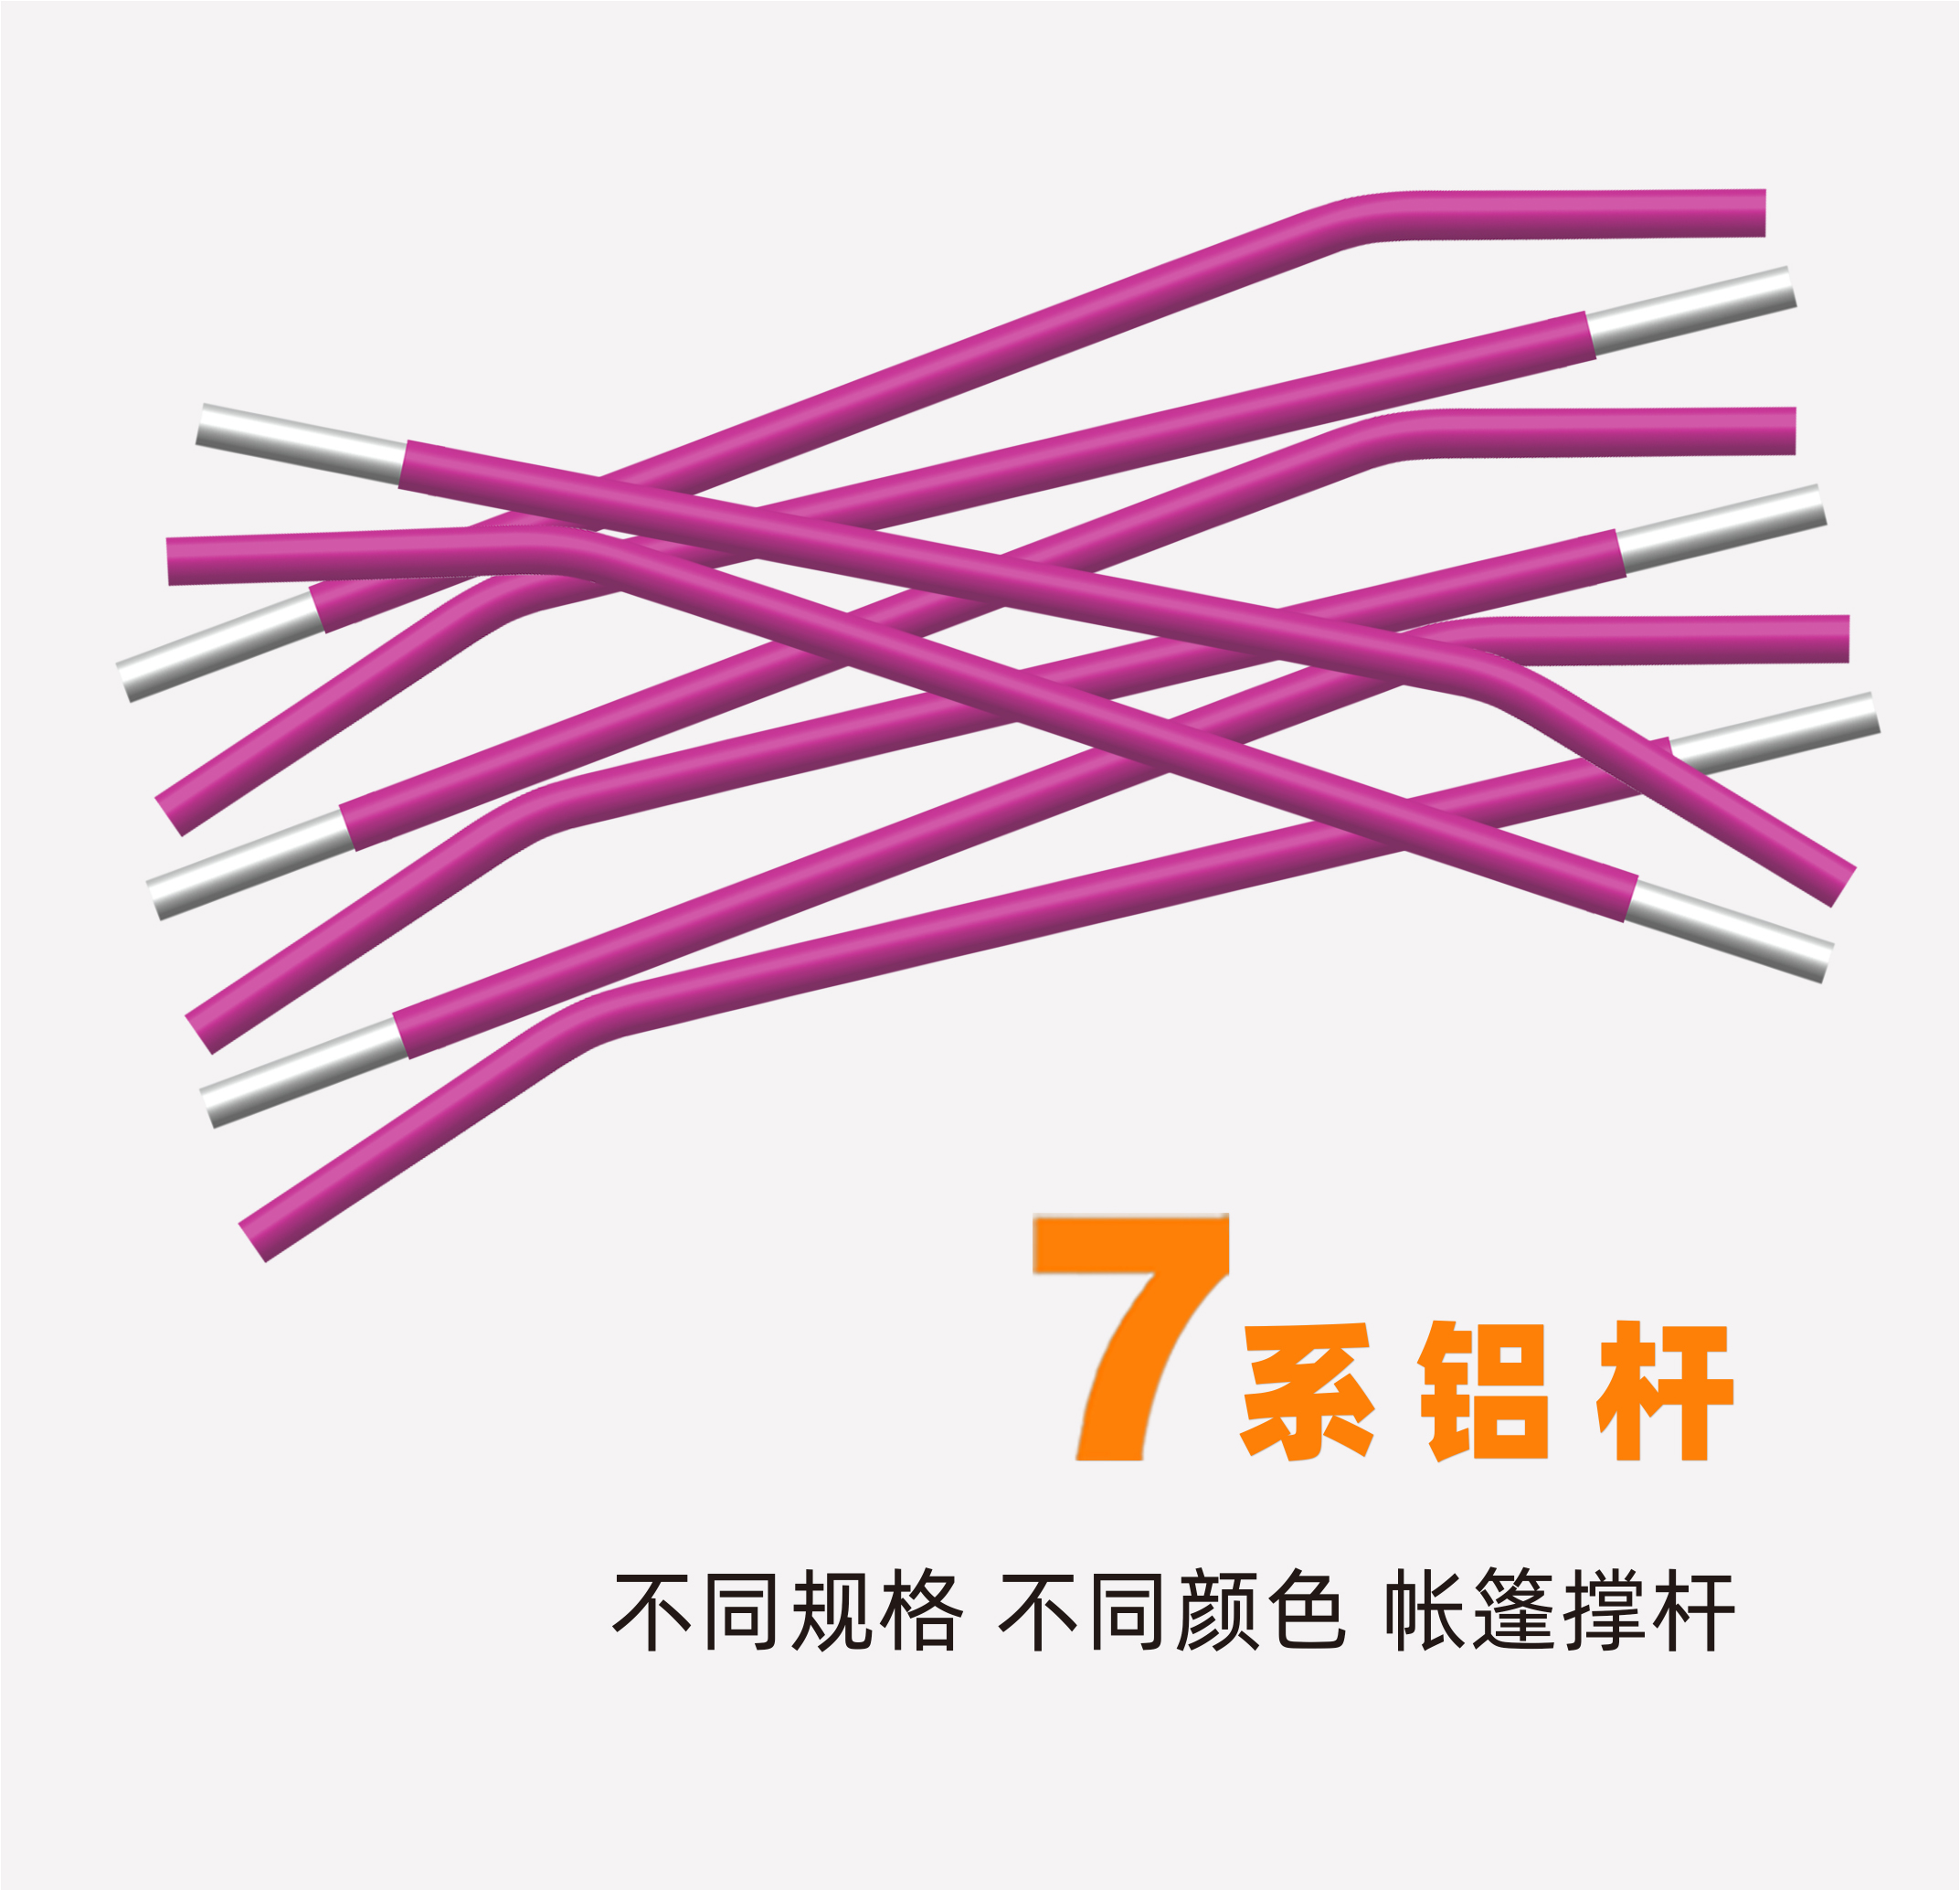 7系铝杆-紫色